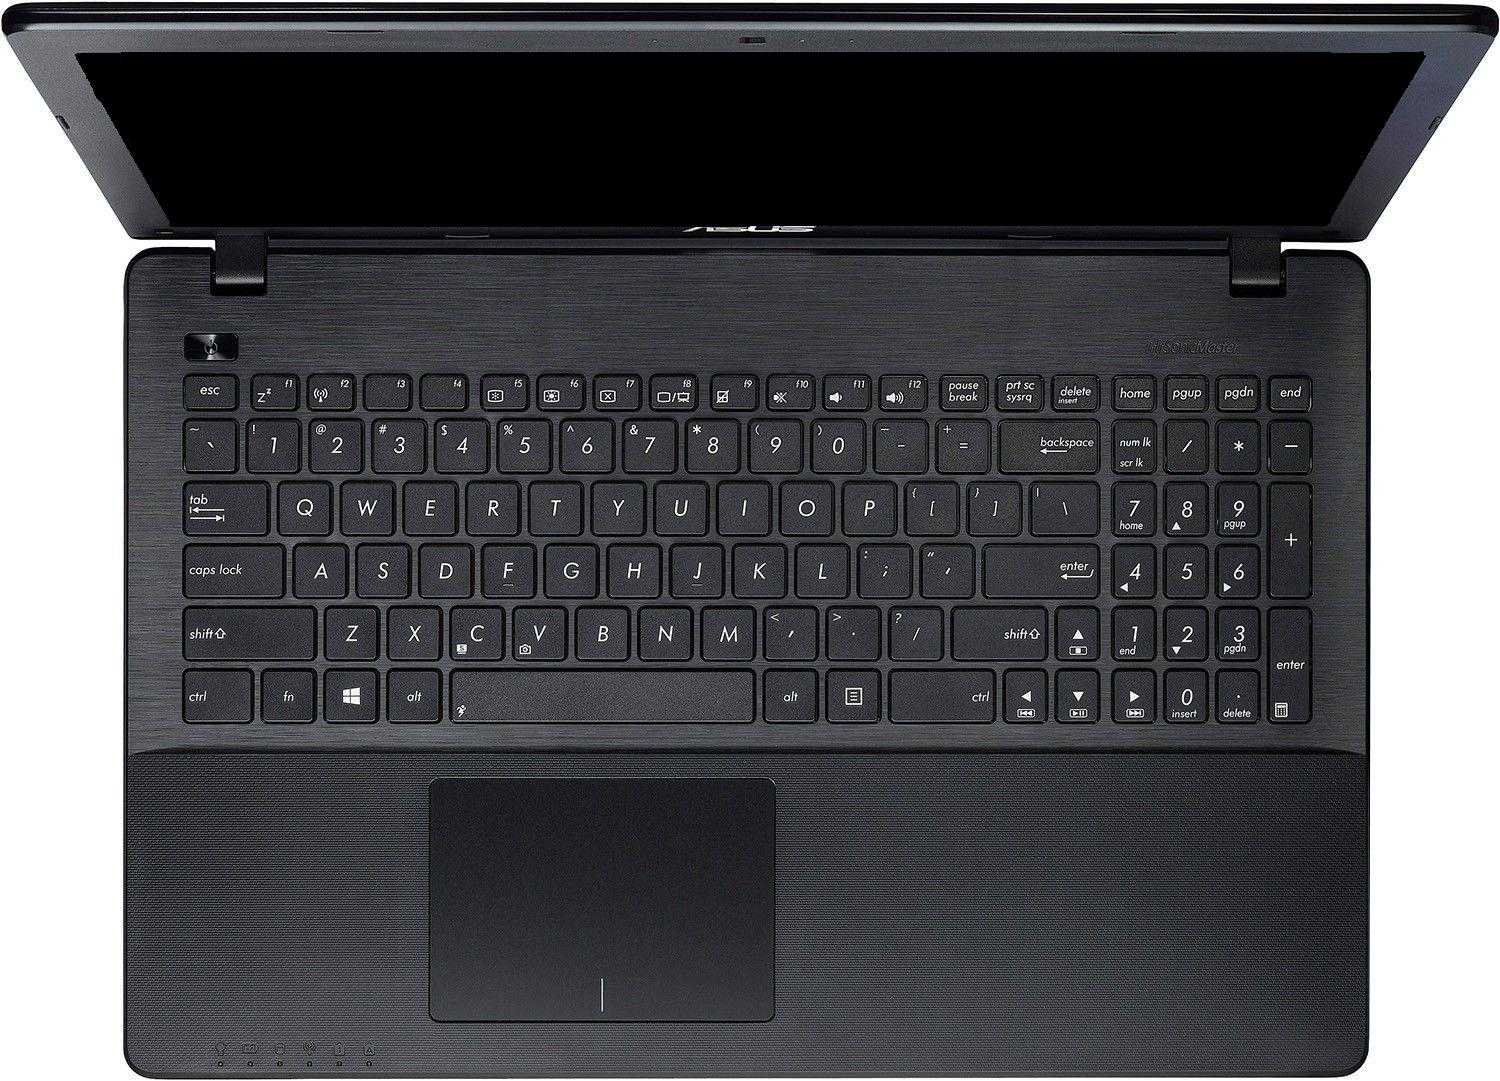 Ноутбук asus x552mj-sx011d — купить, цена и характеристики, отзывы